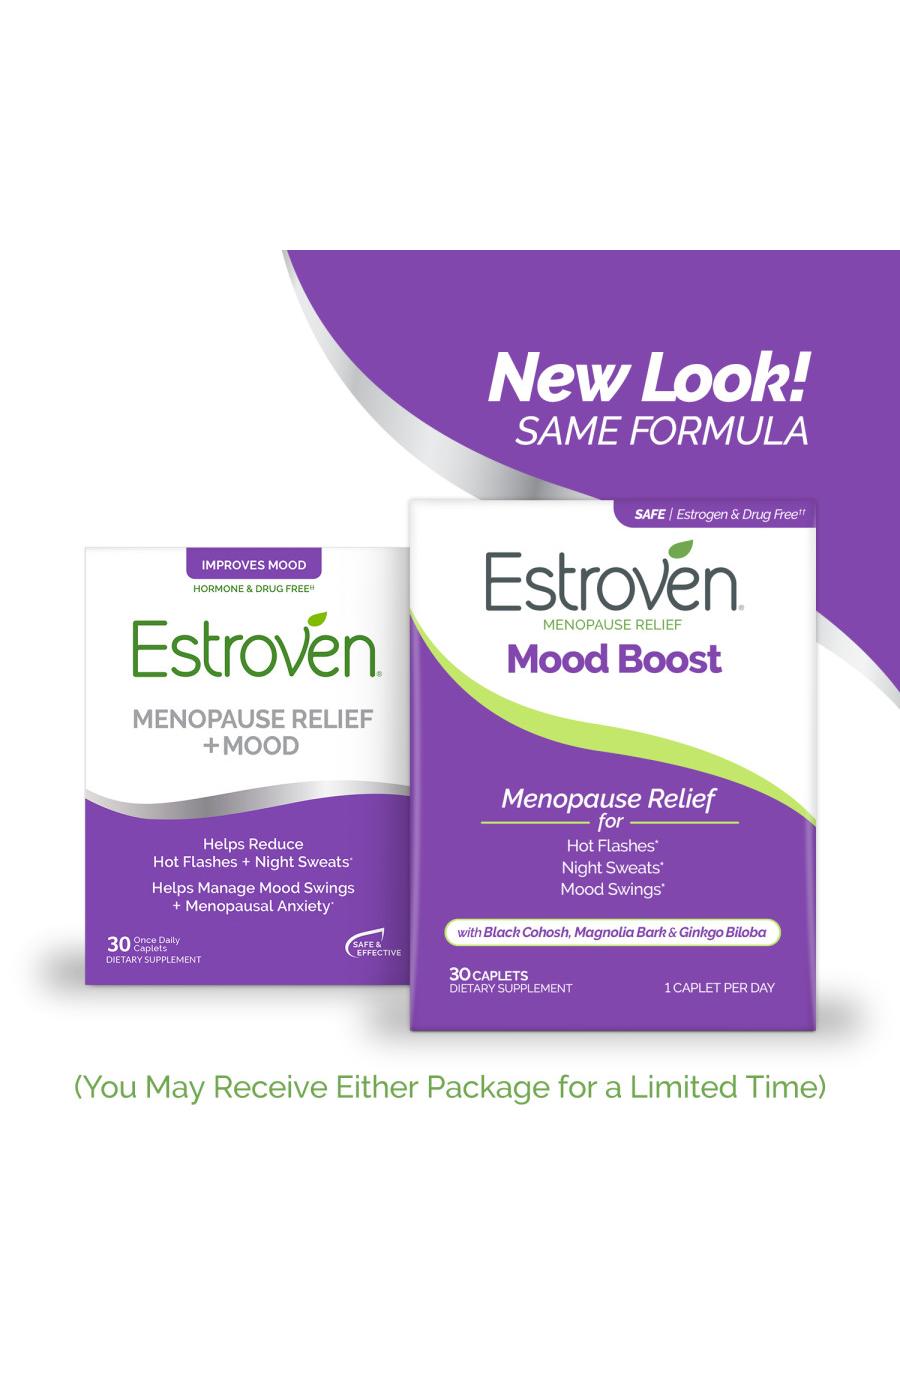 Estroven Menopause Relief + Mood; image 8 of 9